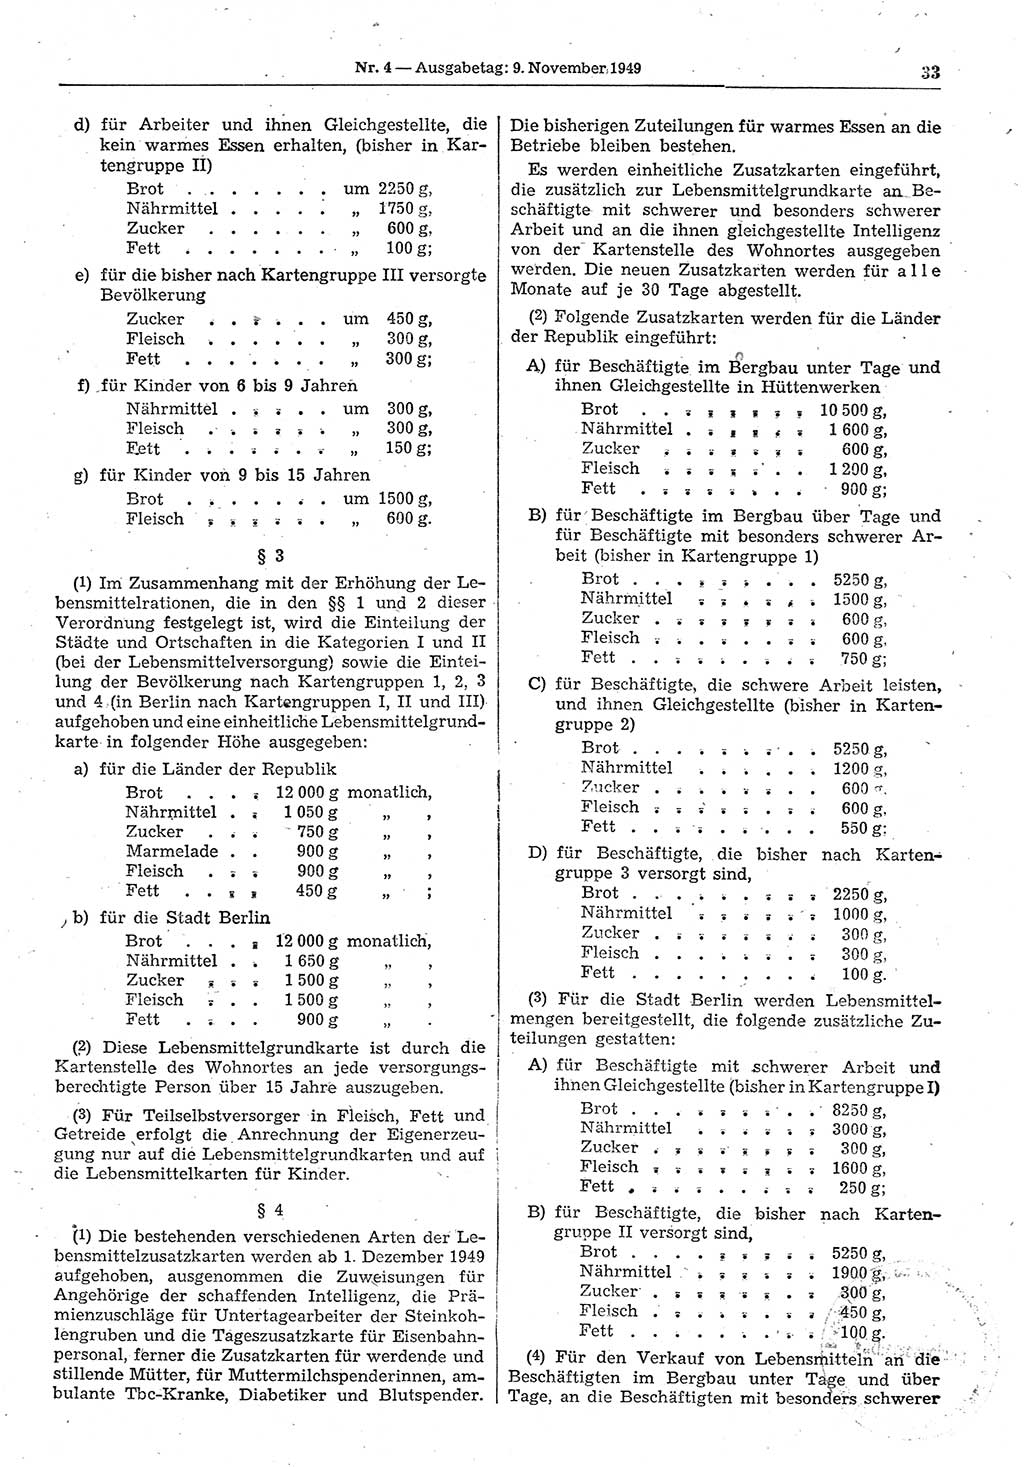 Gesetzblatt (GBl.) der Deutschen Demokratischen Republik (DDR) 1949, Seite 33 (GBl. DDR 1949, S. 33)